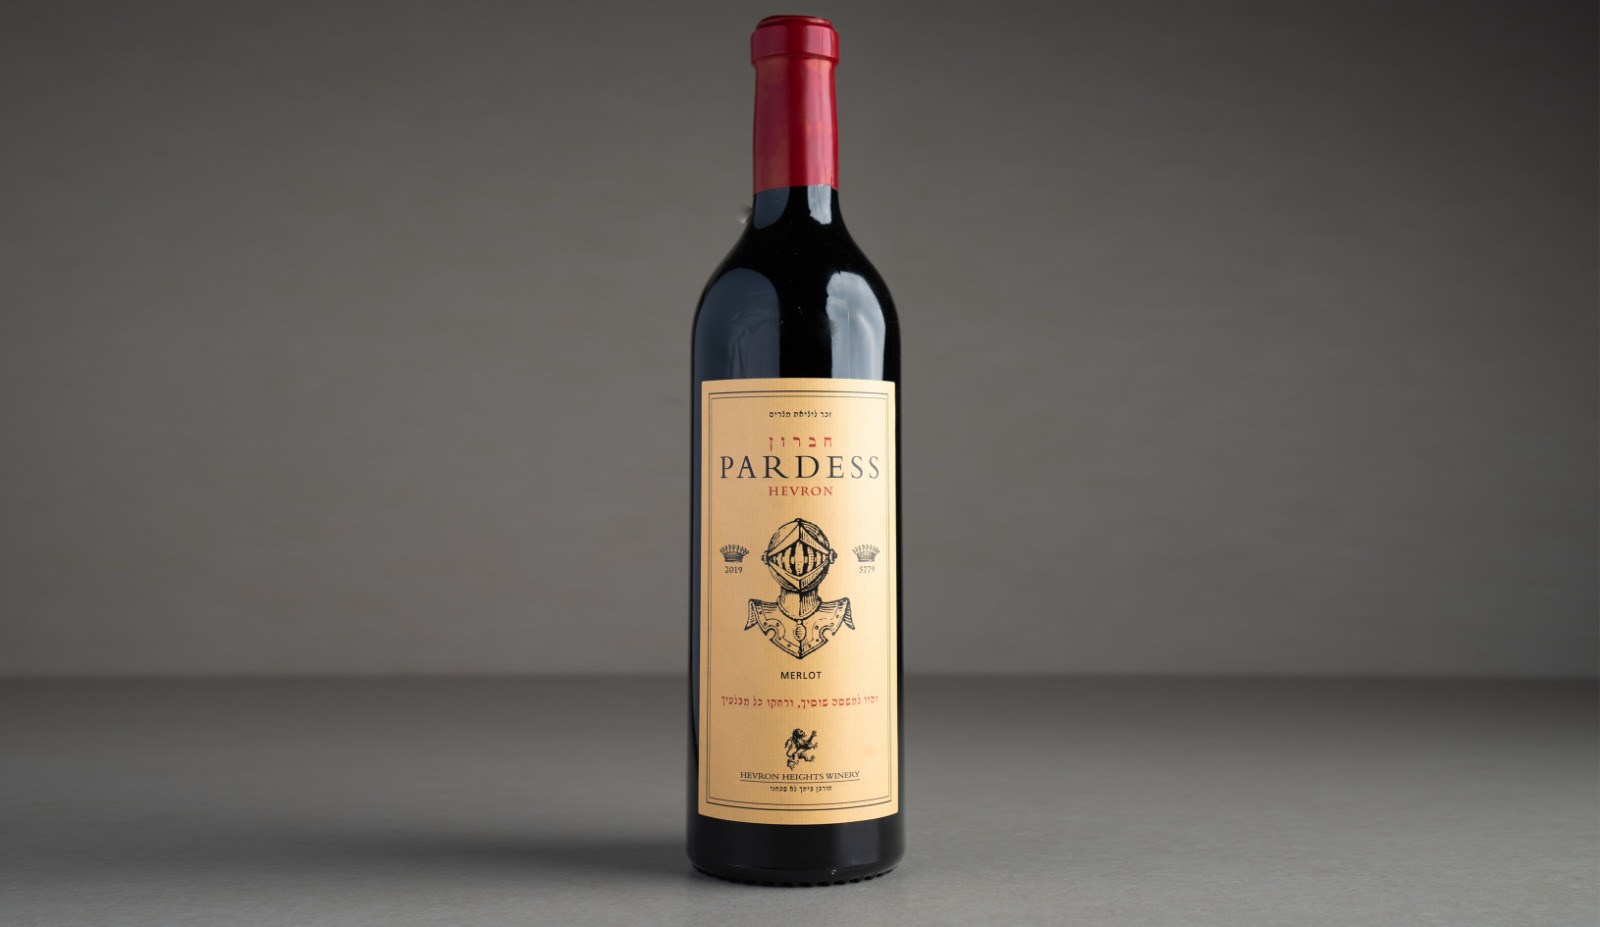 יין אדום "חברון" פרדס מרלו 2019